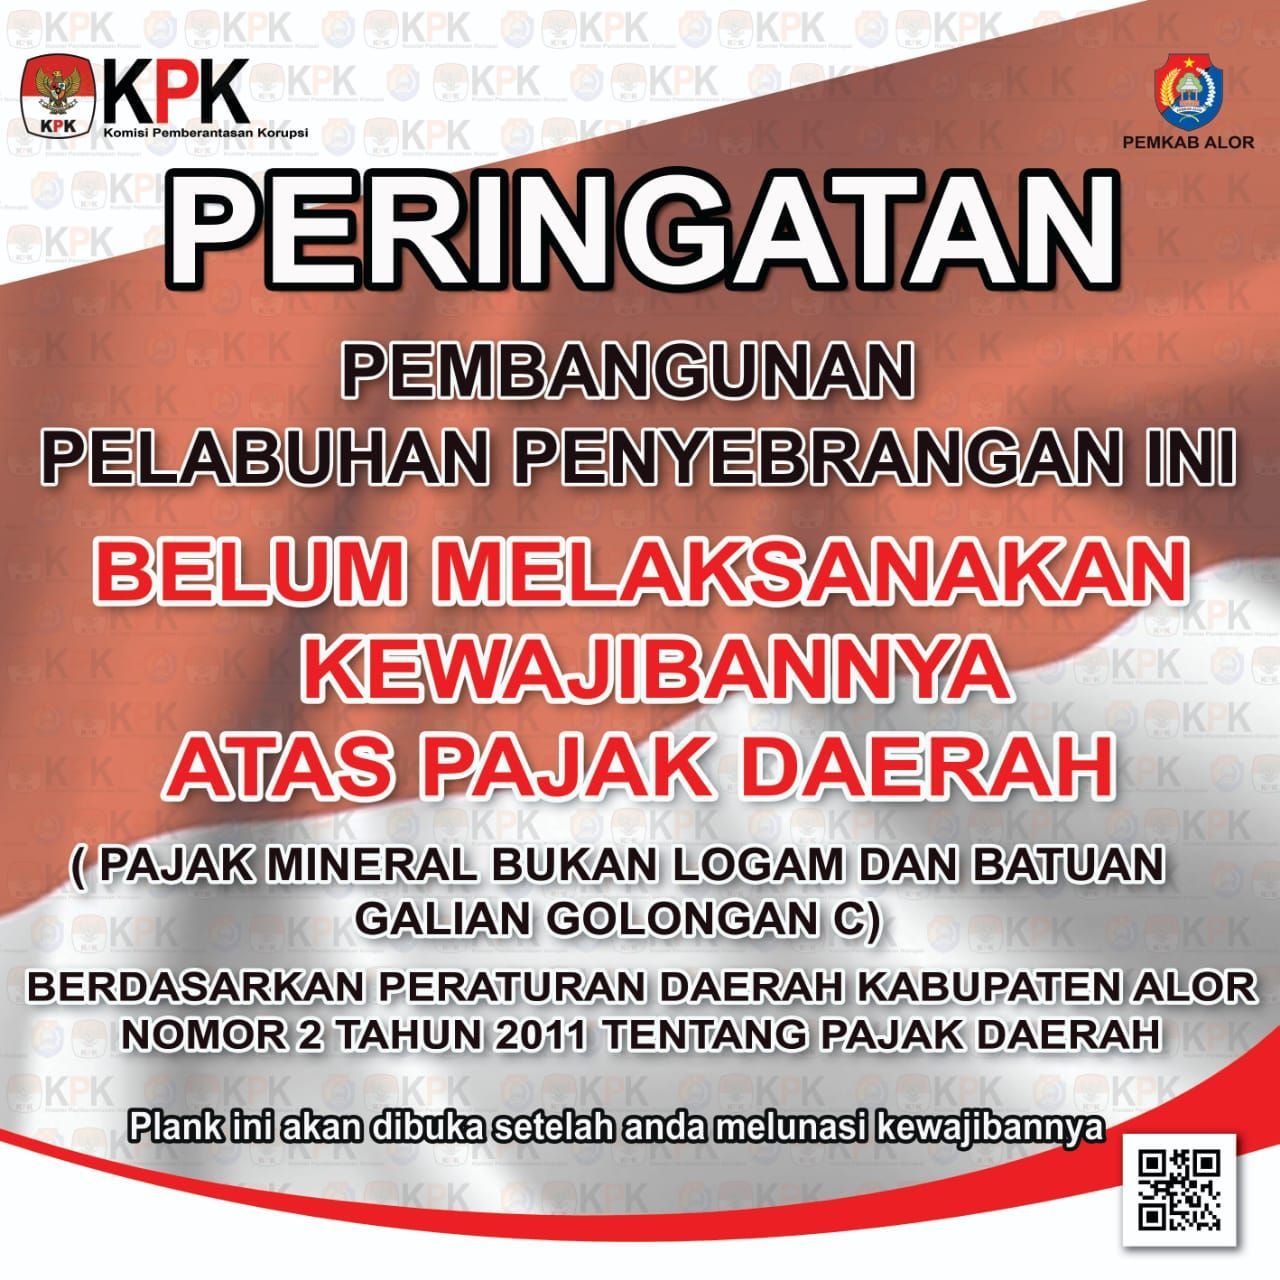 Ini isi tukisan plank peringatan o,eh KPK dan Pemkab Alor terhadap perusahaan yang mengerjakan proyek pelabuhan fery Kalabahi yangndipasangndi bangunan terminal pelabuhan tersebut